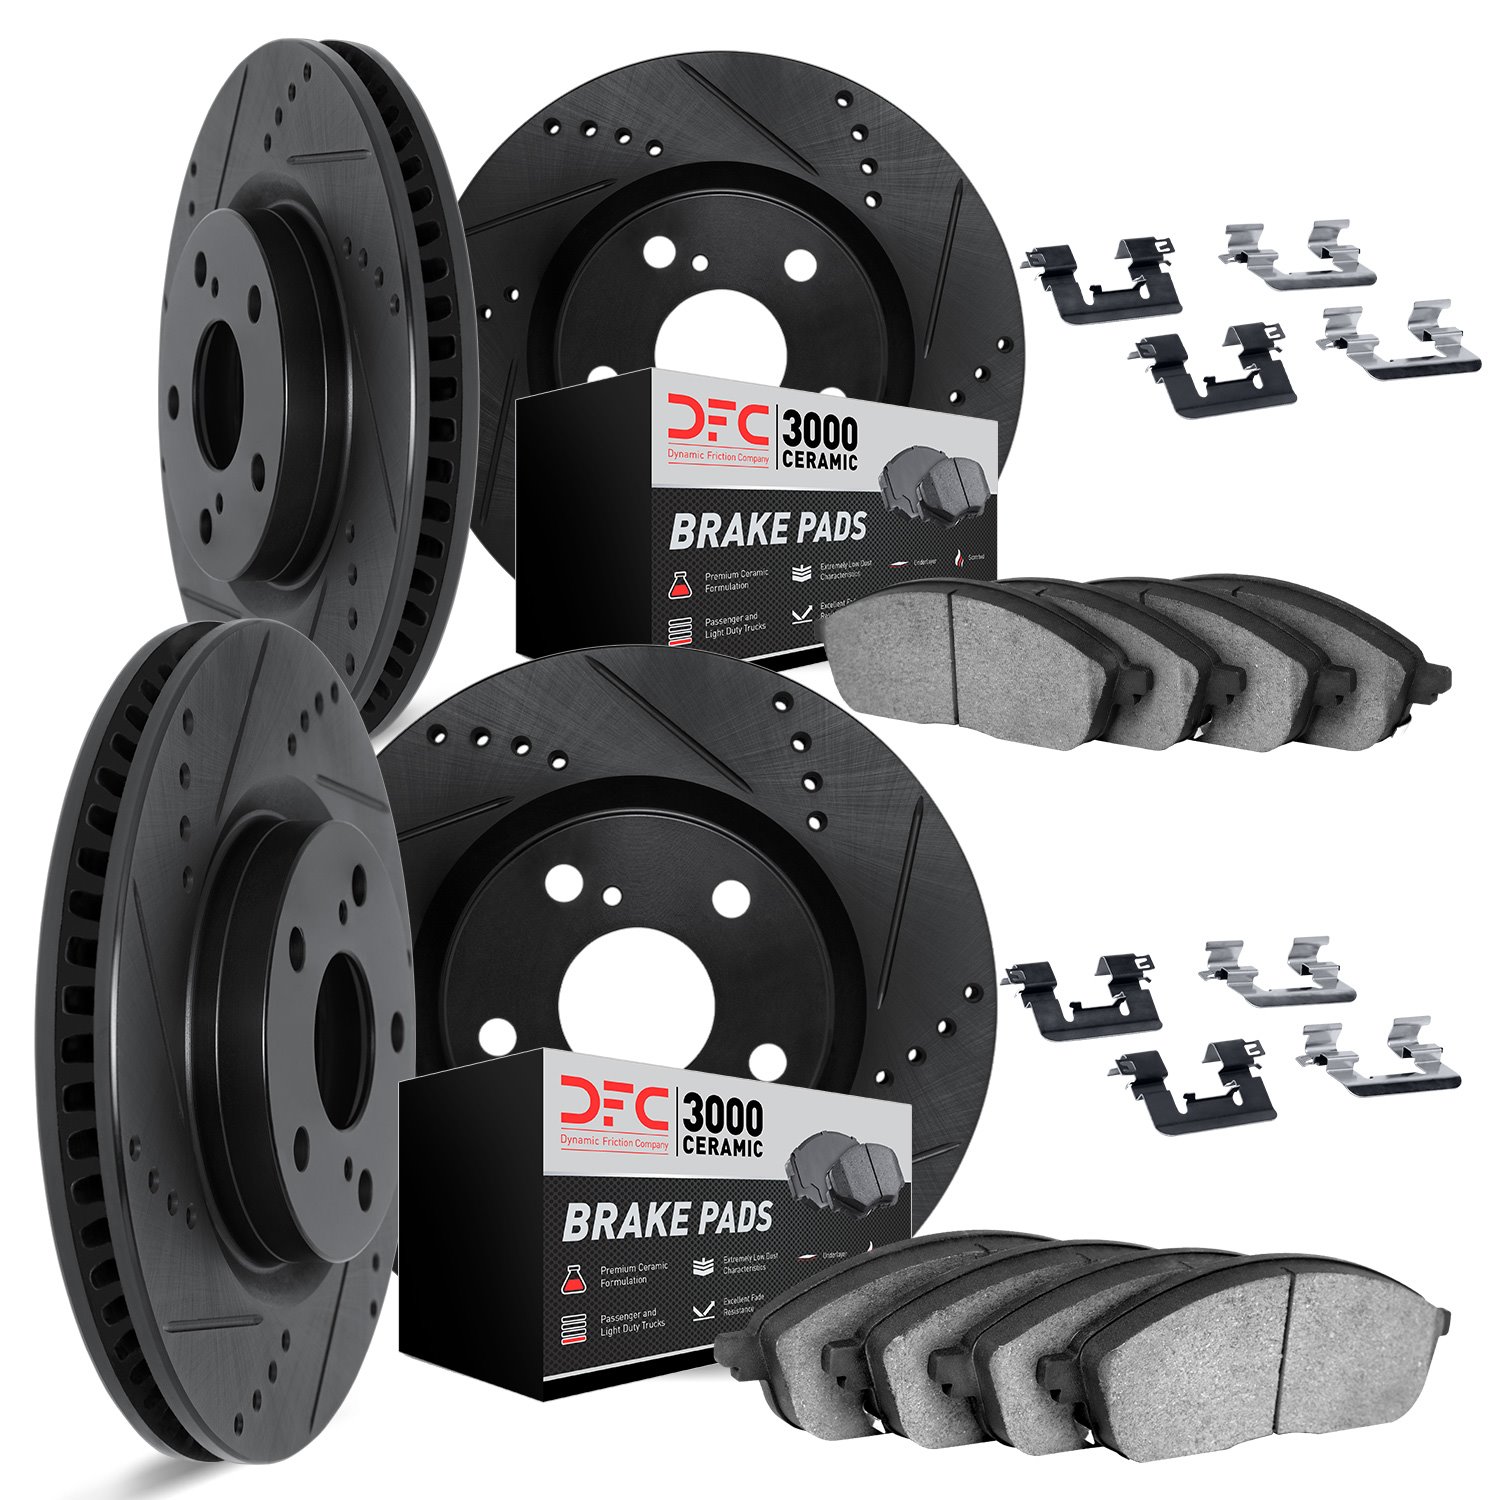 8314-75019 Drilled/Slotted Brake Rotors with 3000-Series Ceramic Brake Pads Kit & Hardware [Black], 2014-2015 Lexus/Toyota/Scion